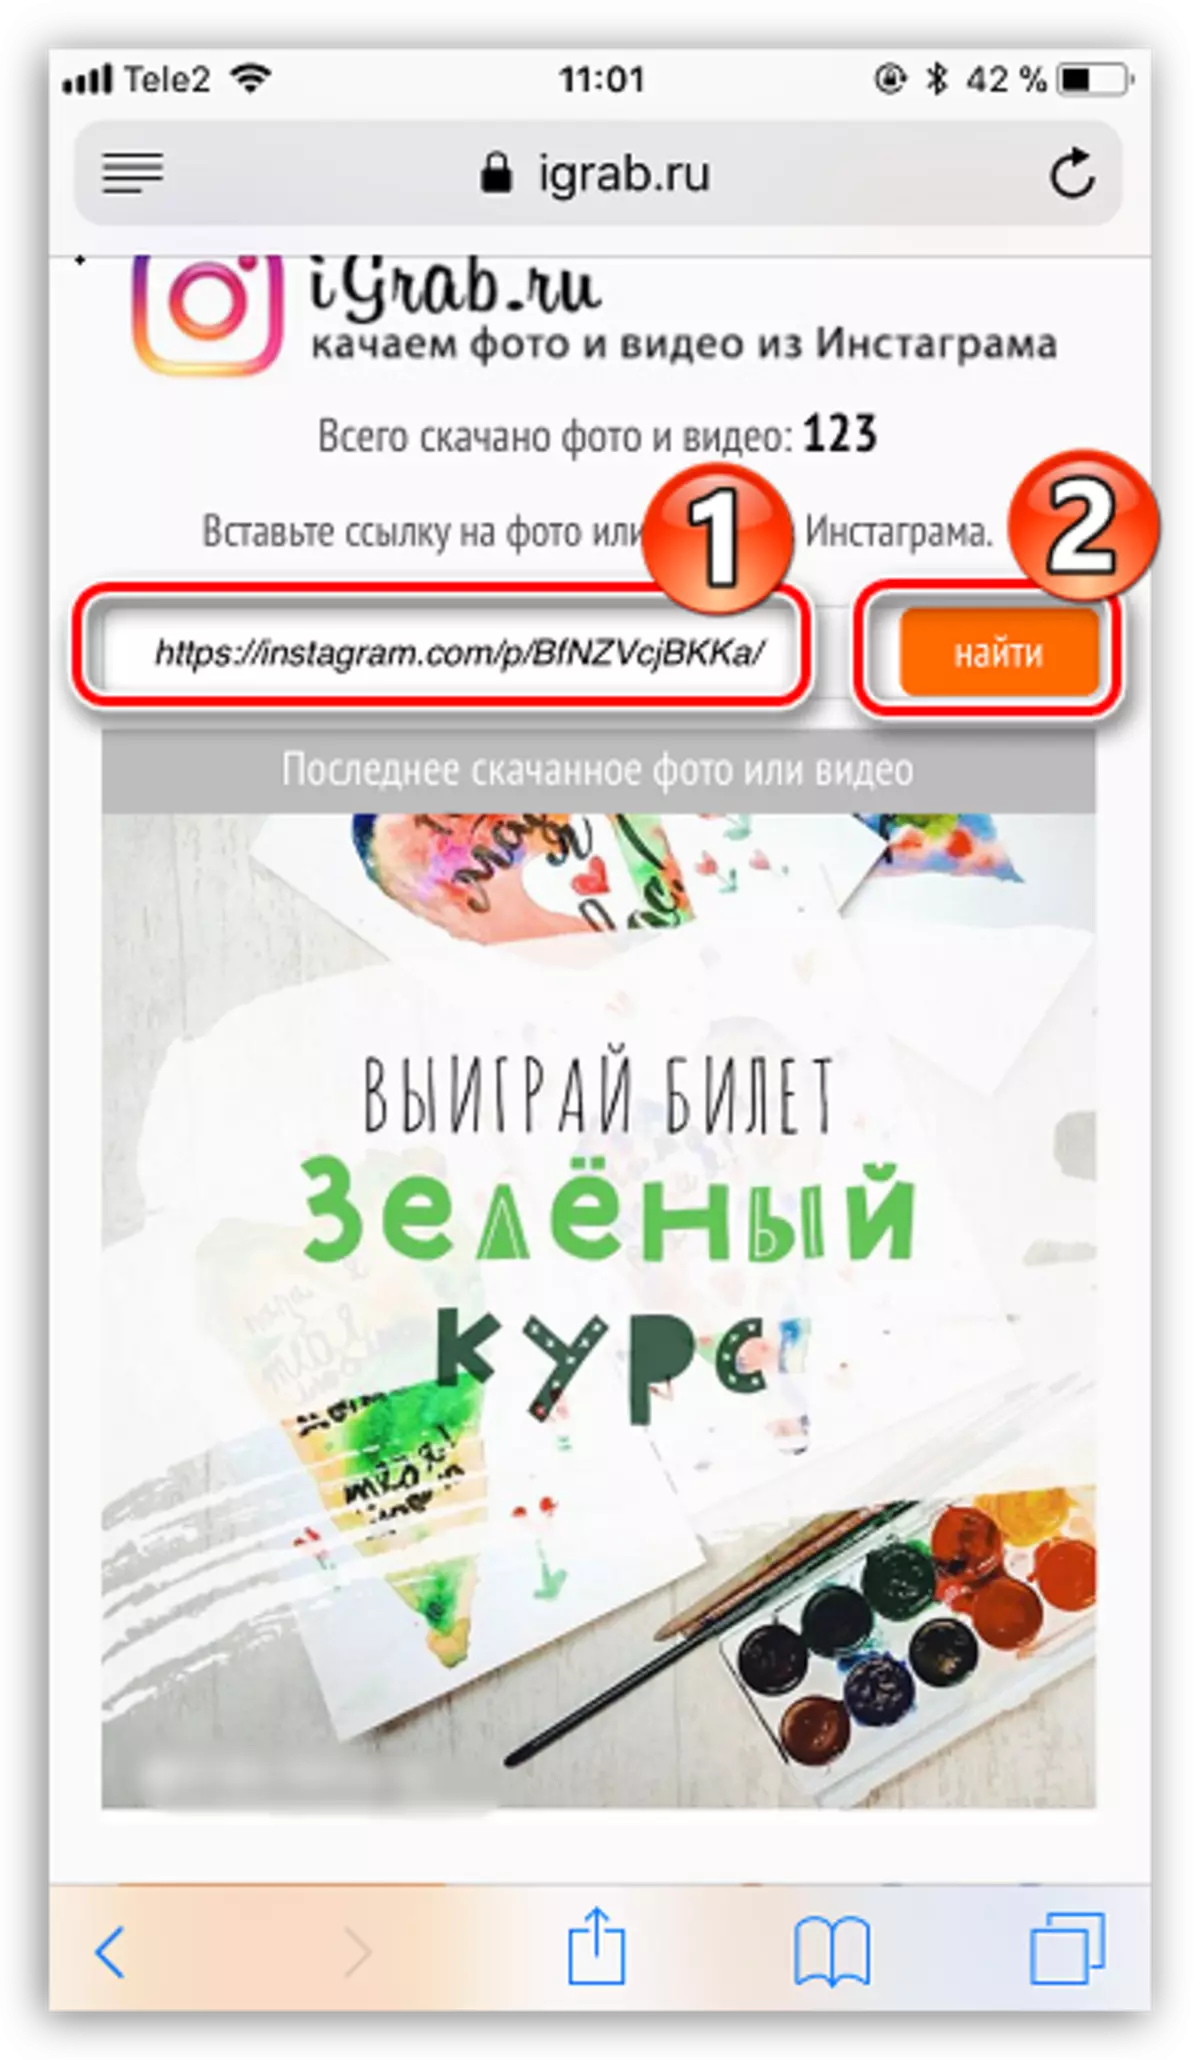 ค้นหาวิดีโอบนเว็บไซต์ igrab.ru